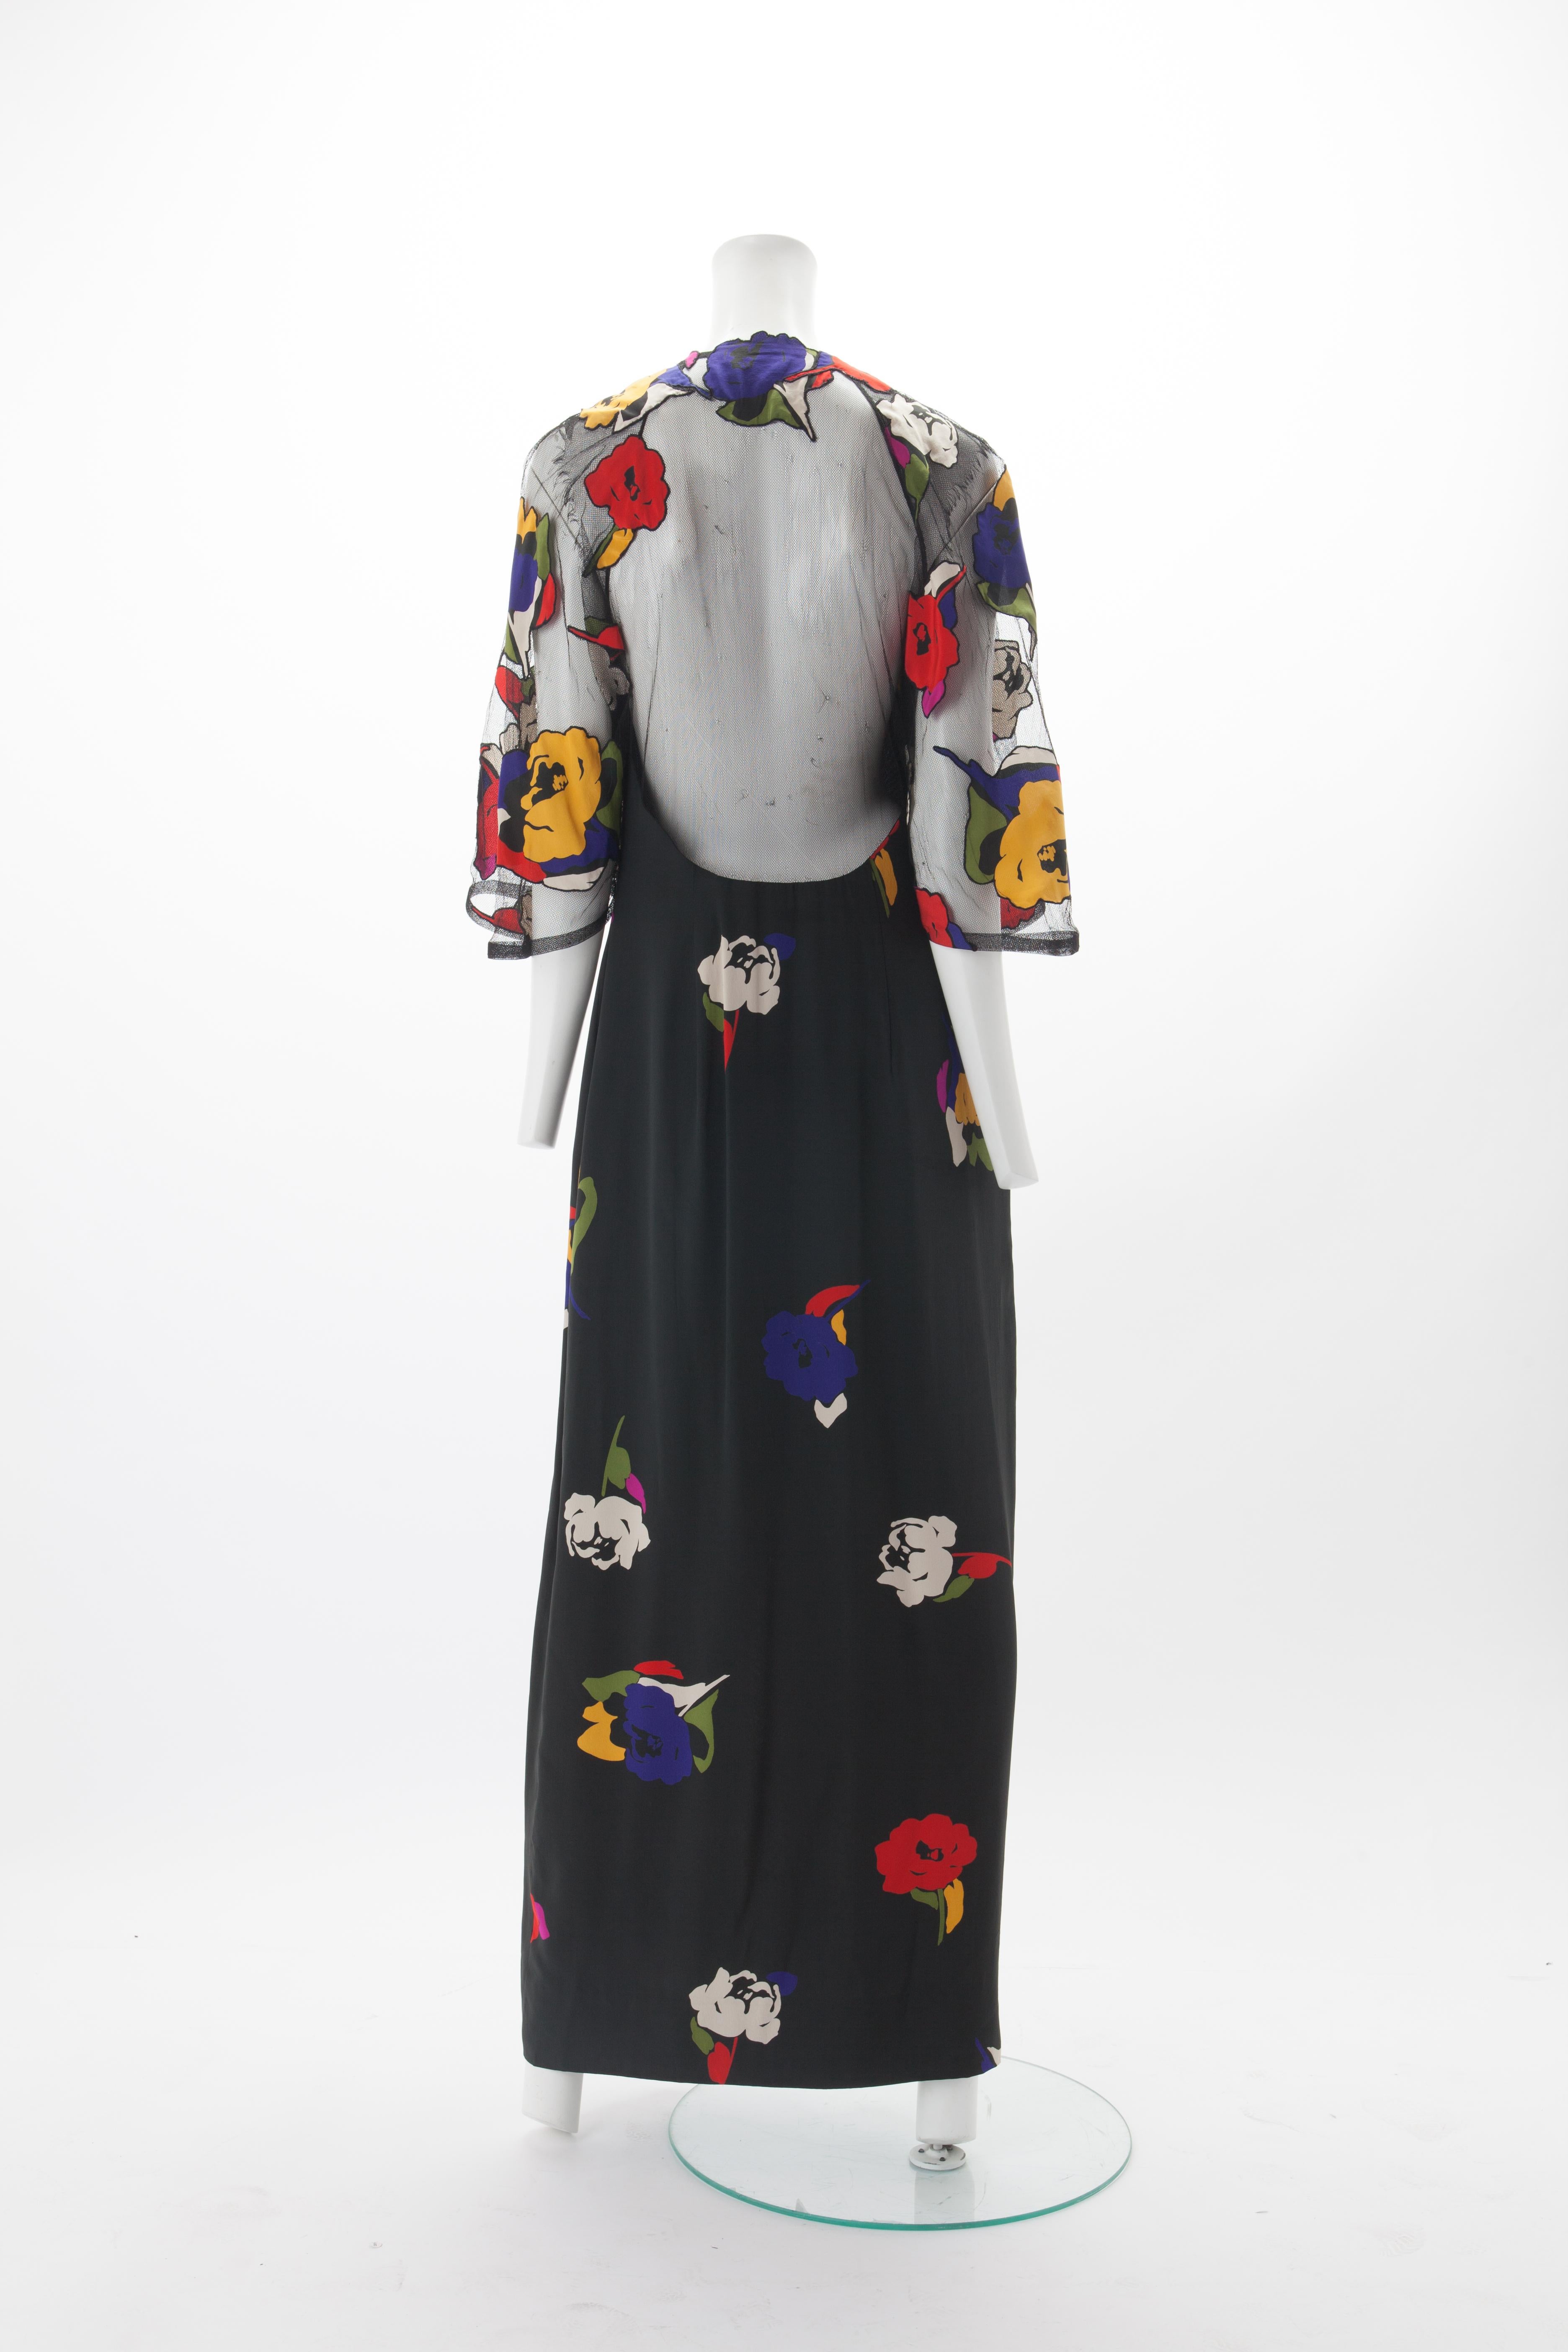 Black Pauline Trigère Silk and Net Gown with Floral Appliqués c.1970s.